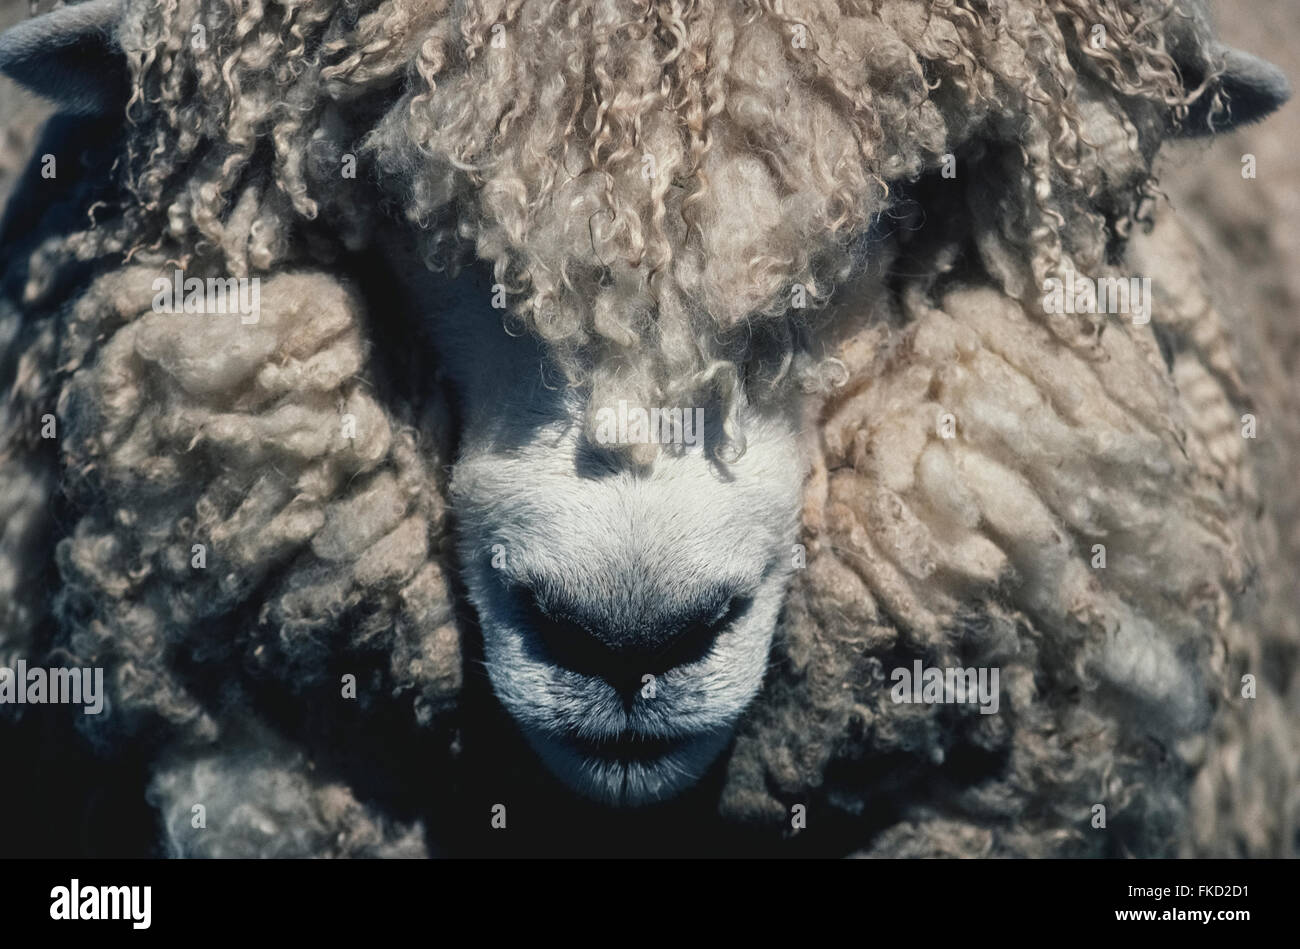 Das dicke wollige Fell dieser Schafe in Neuseeland verbirgt sich die meisten von seinem Gesicht. New Zealand Schafpopulation auf rund 30,002015 Millionen gesunken, aber dieser Nation ikonischen Nutztier noch zahlenmäßig überlegen sein Volk sechs zu eins. Stockfoto